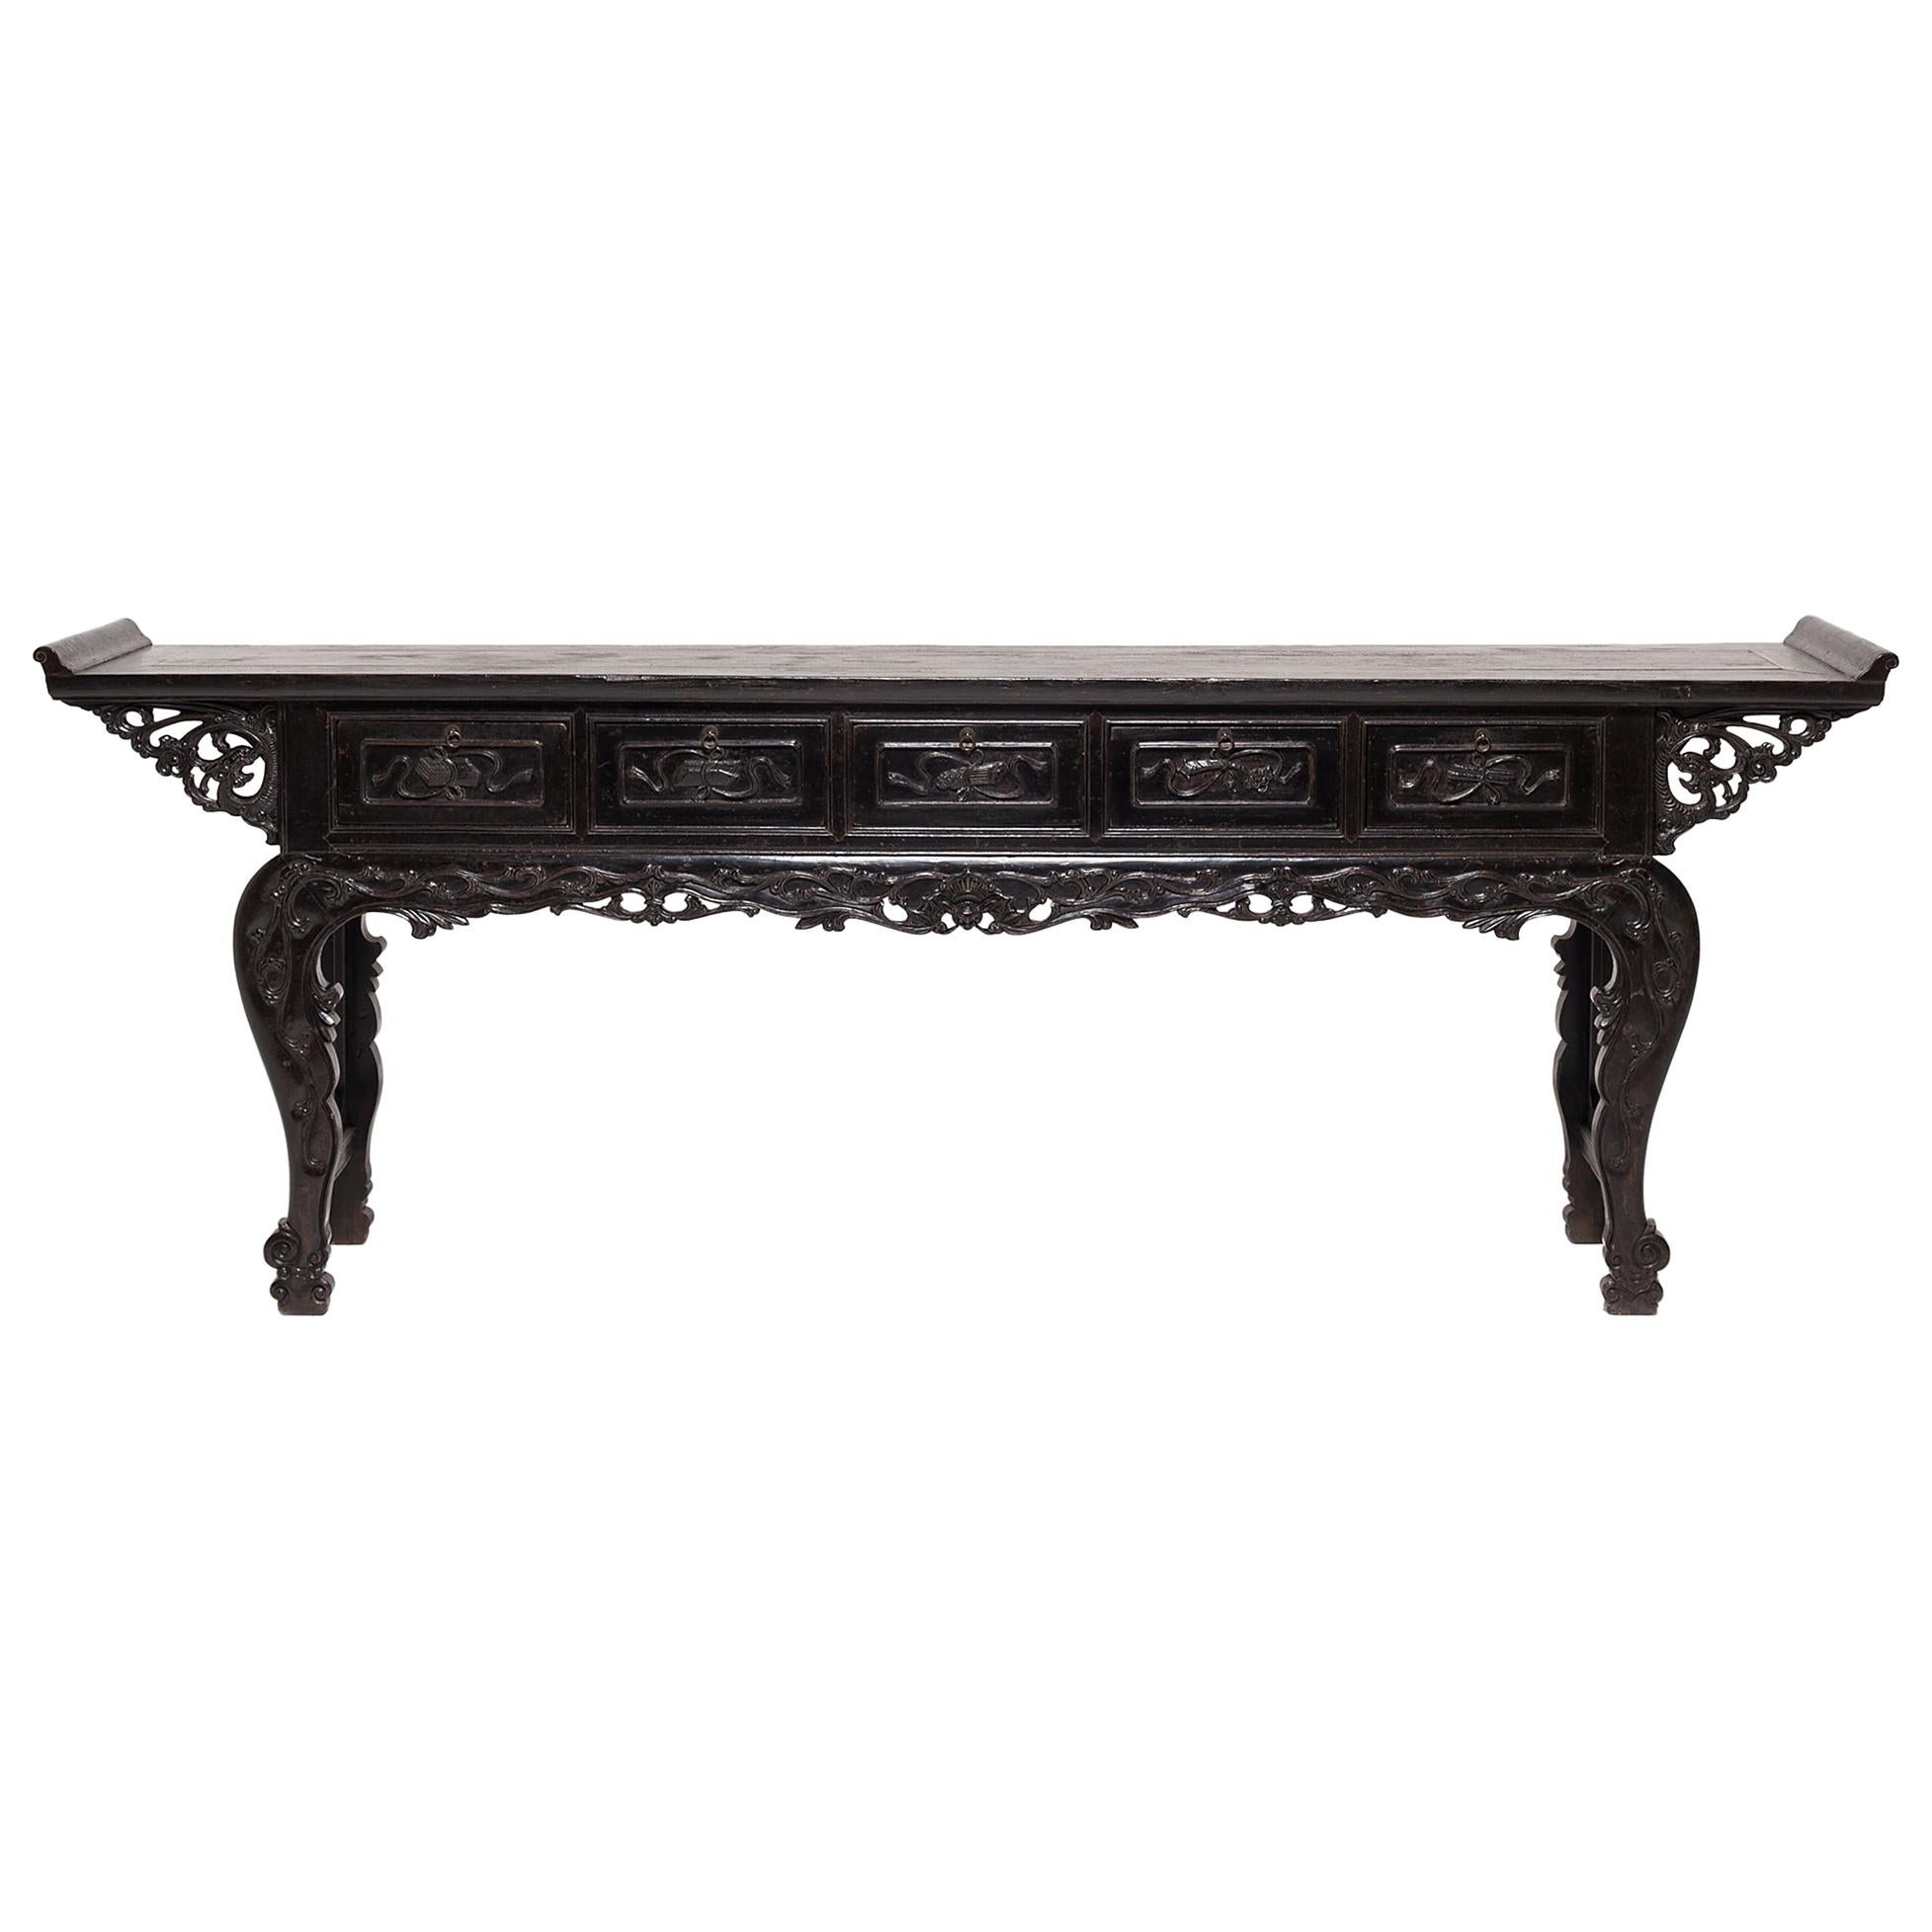 Table console chinoise finement sculptée, vers 1800